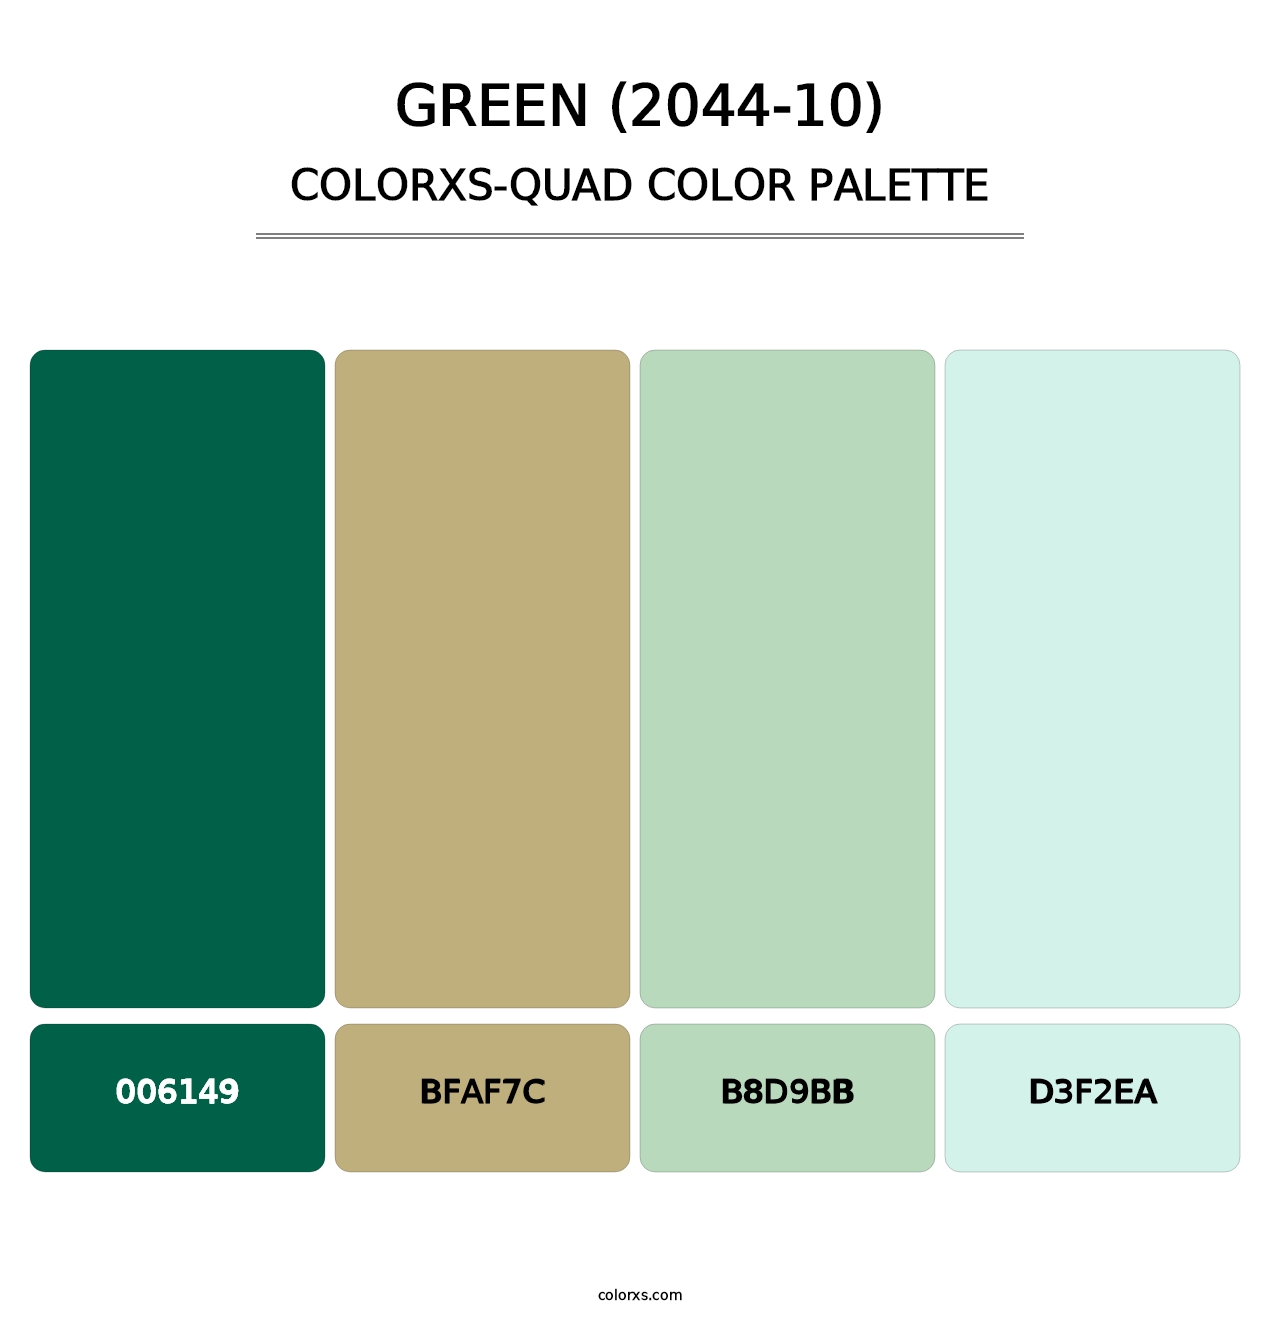 Green (2044-10) - Colorxs Quad Palette